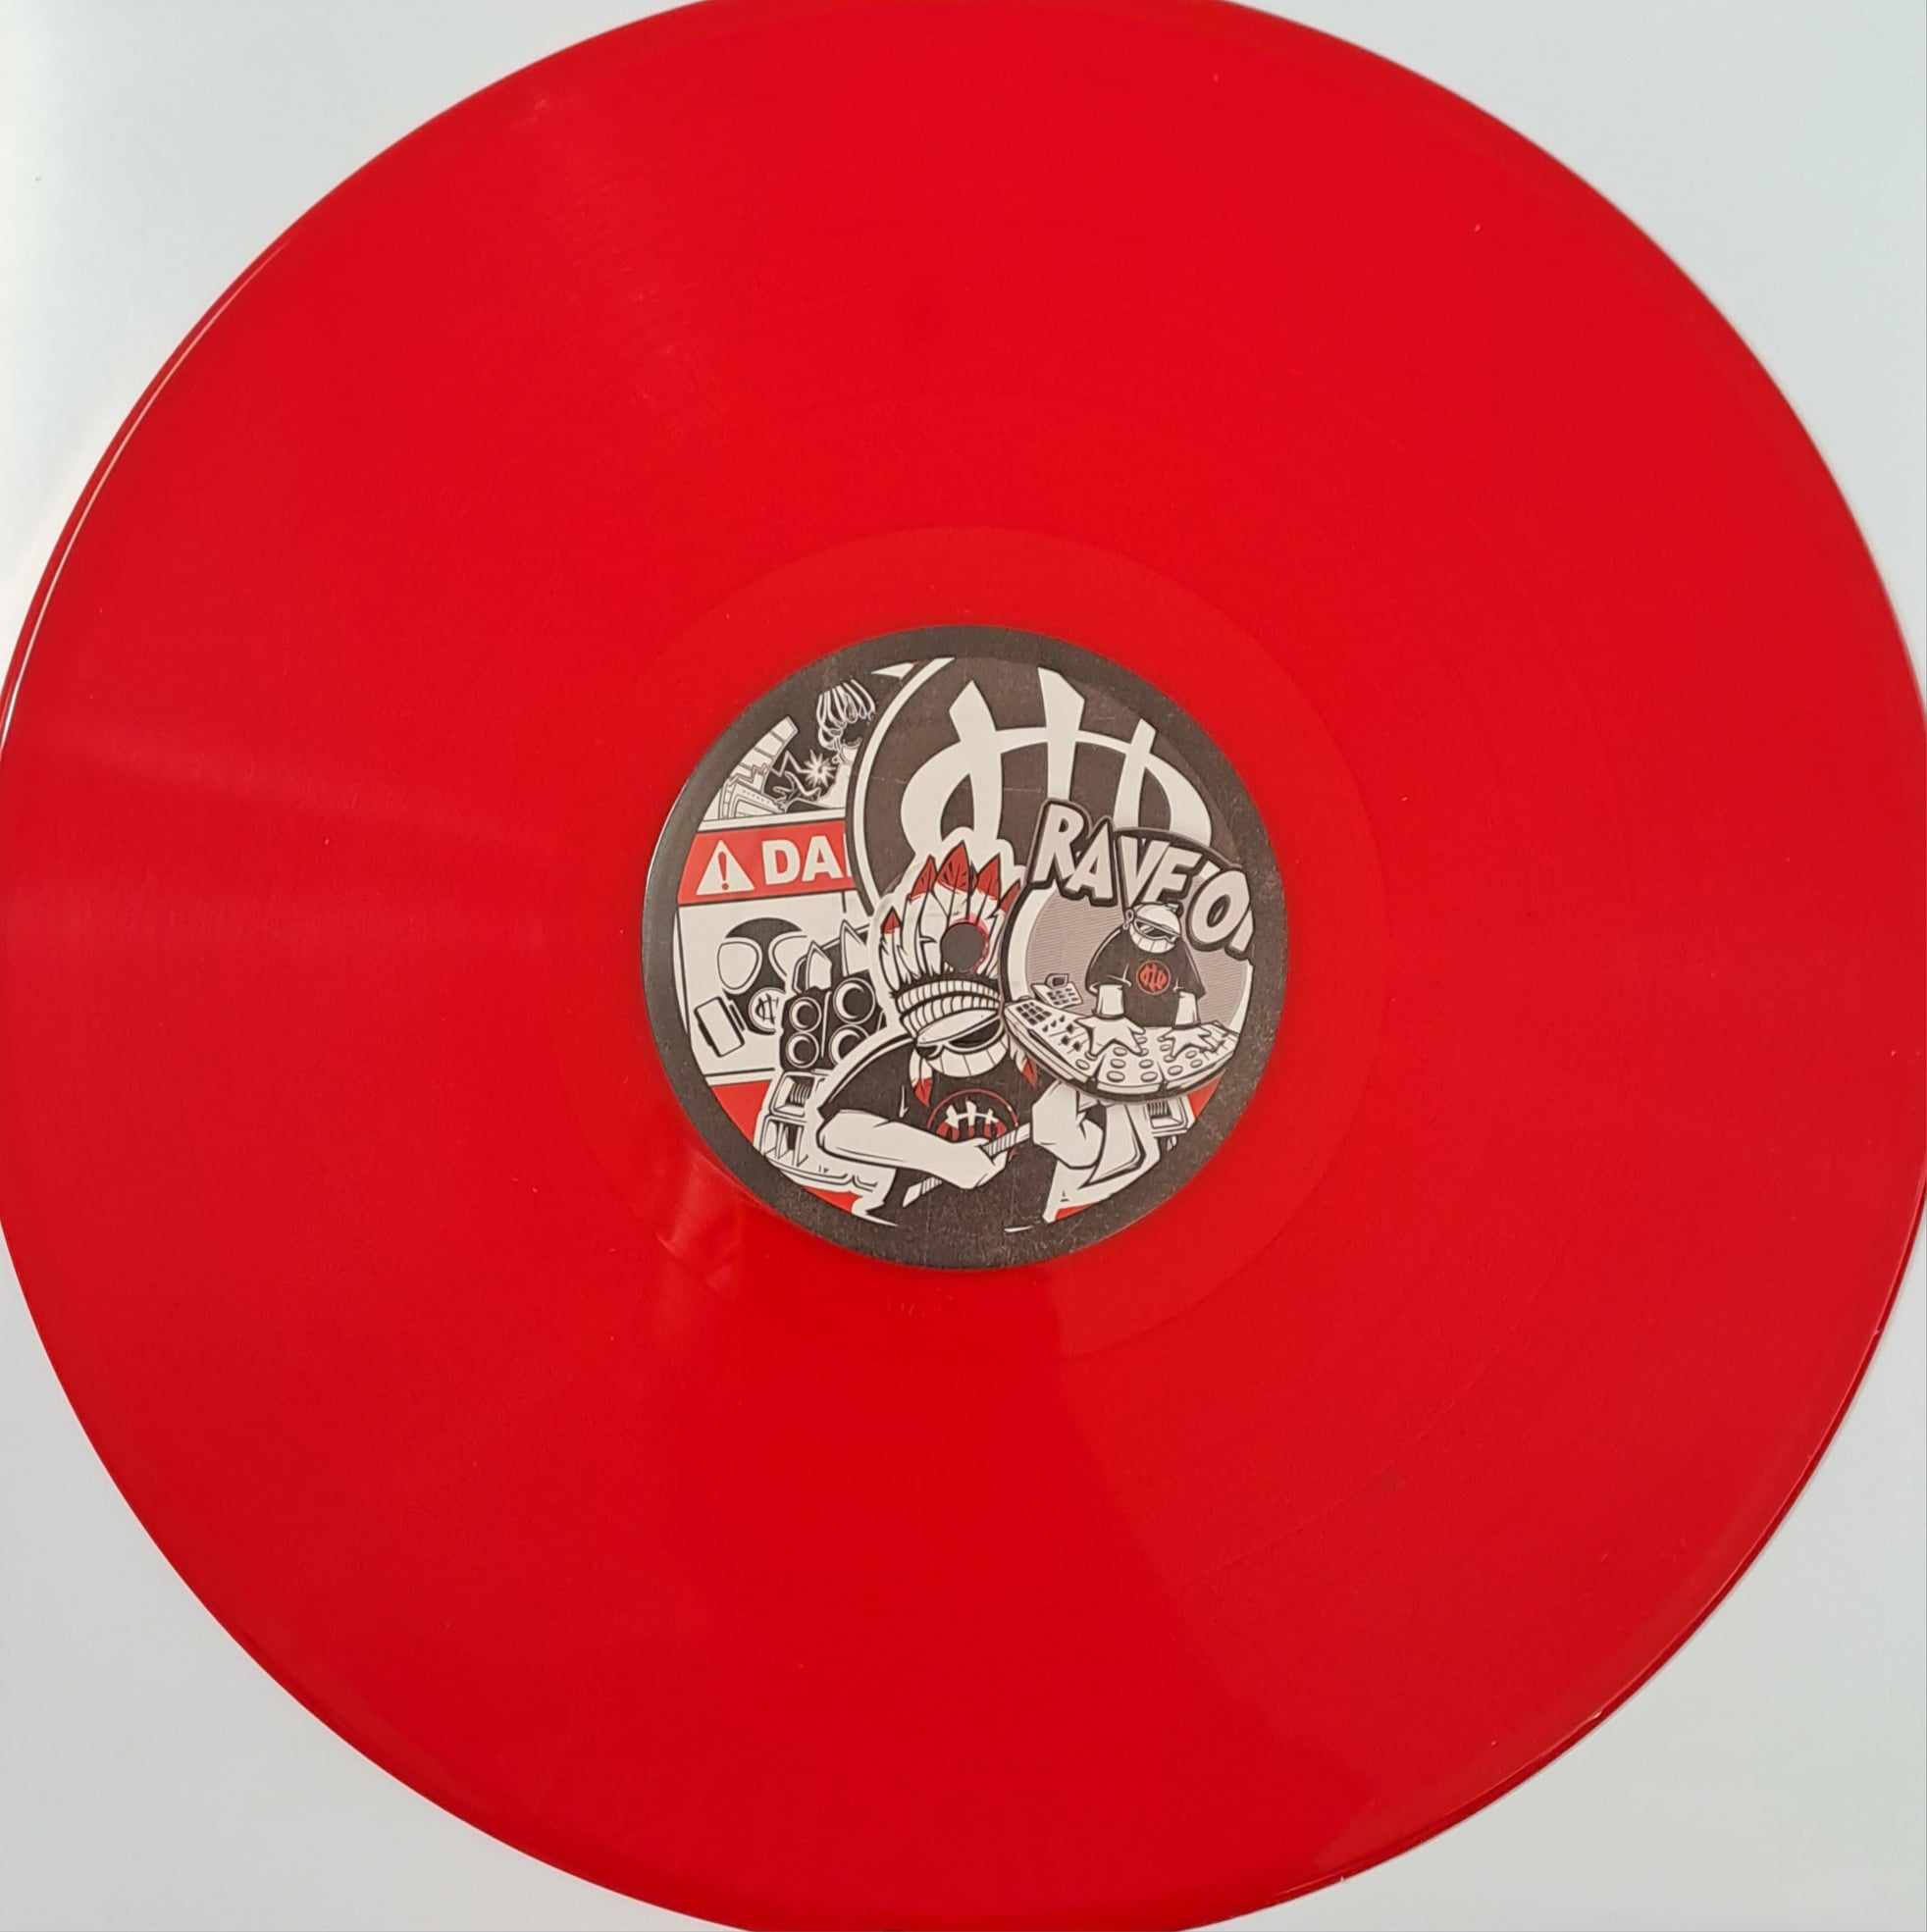 Okupe VA 01 (rouge) - vinyle freetekno